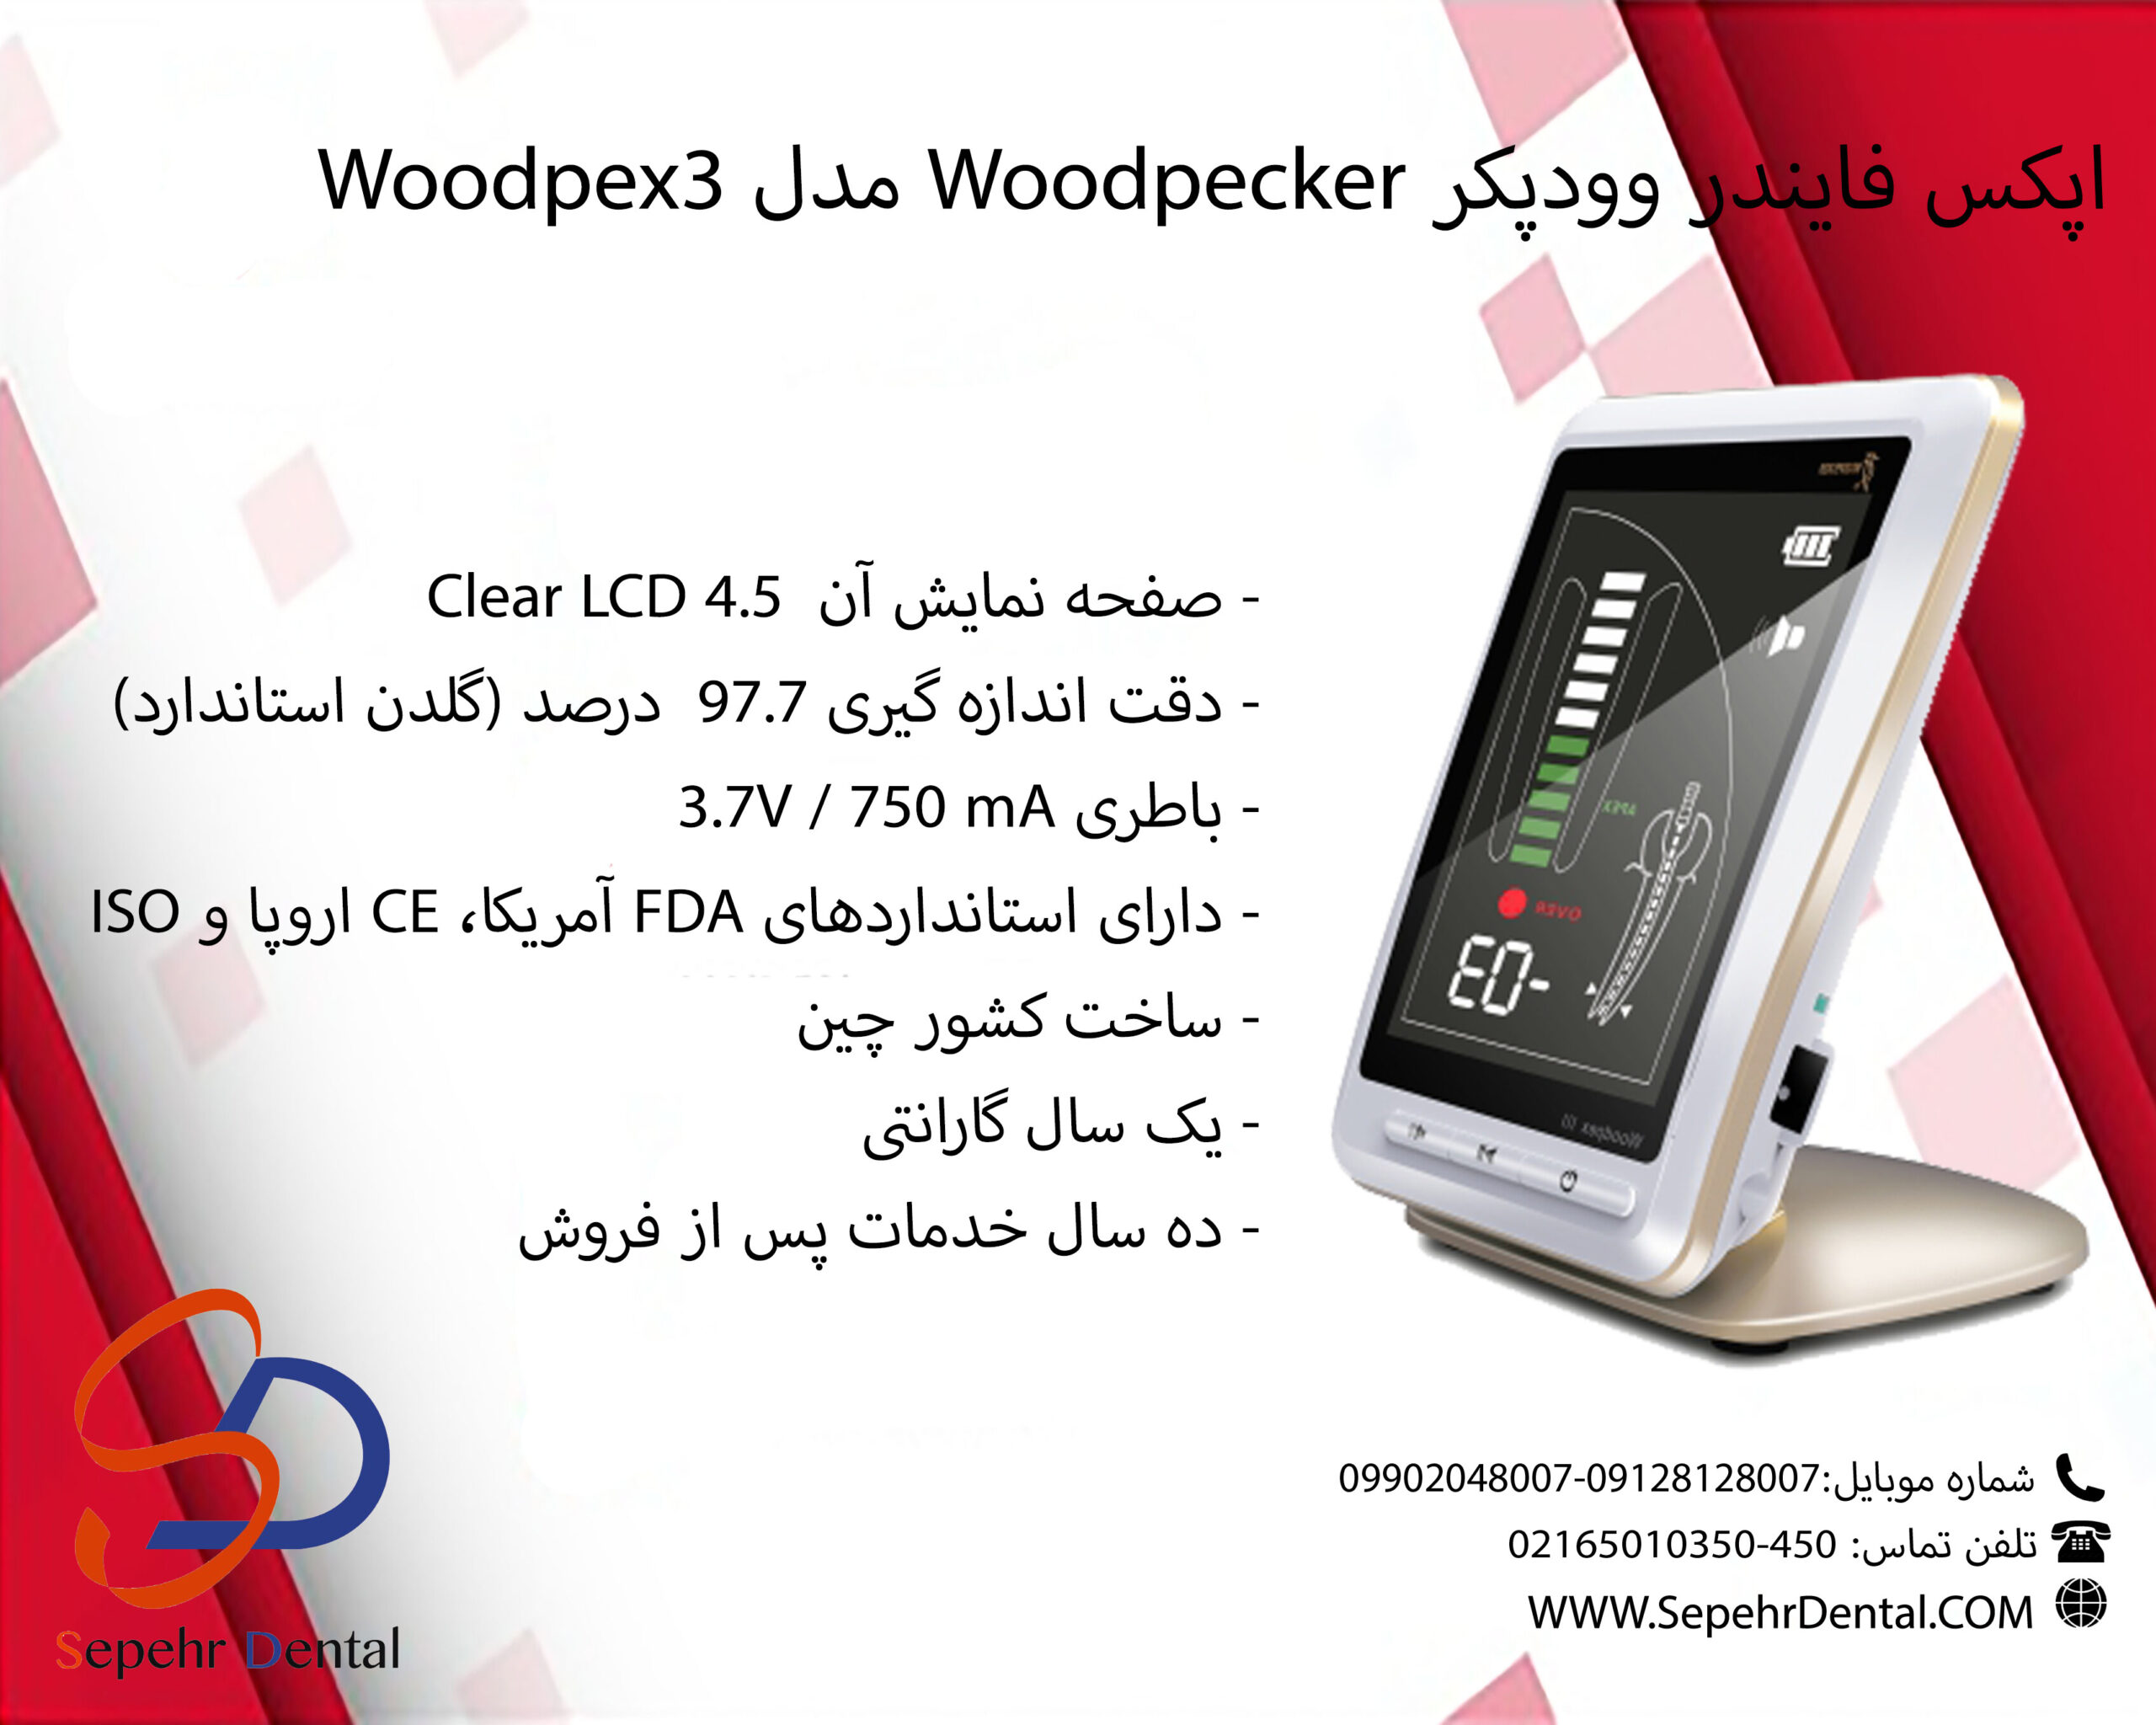 اپکس فایندر وودپیکر Woodpecker مدل وودپکس Woodpex 3